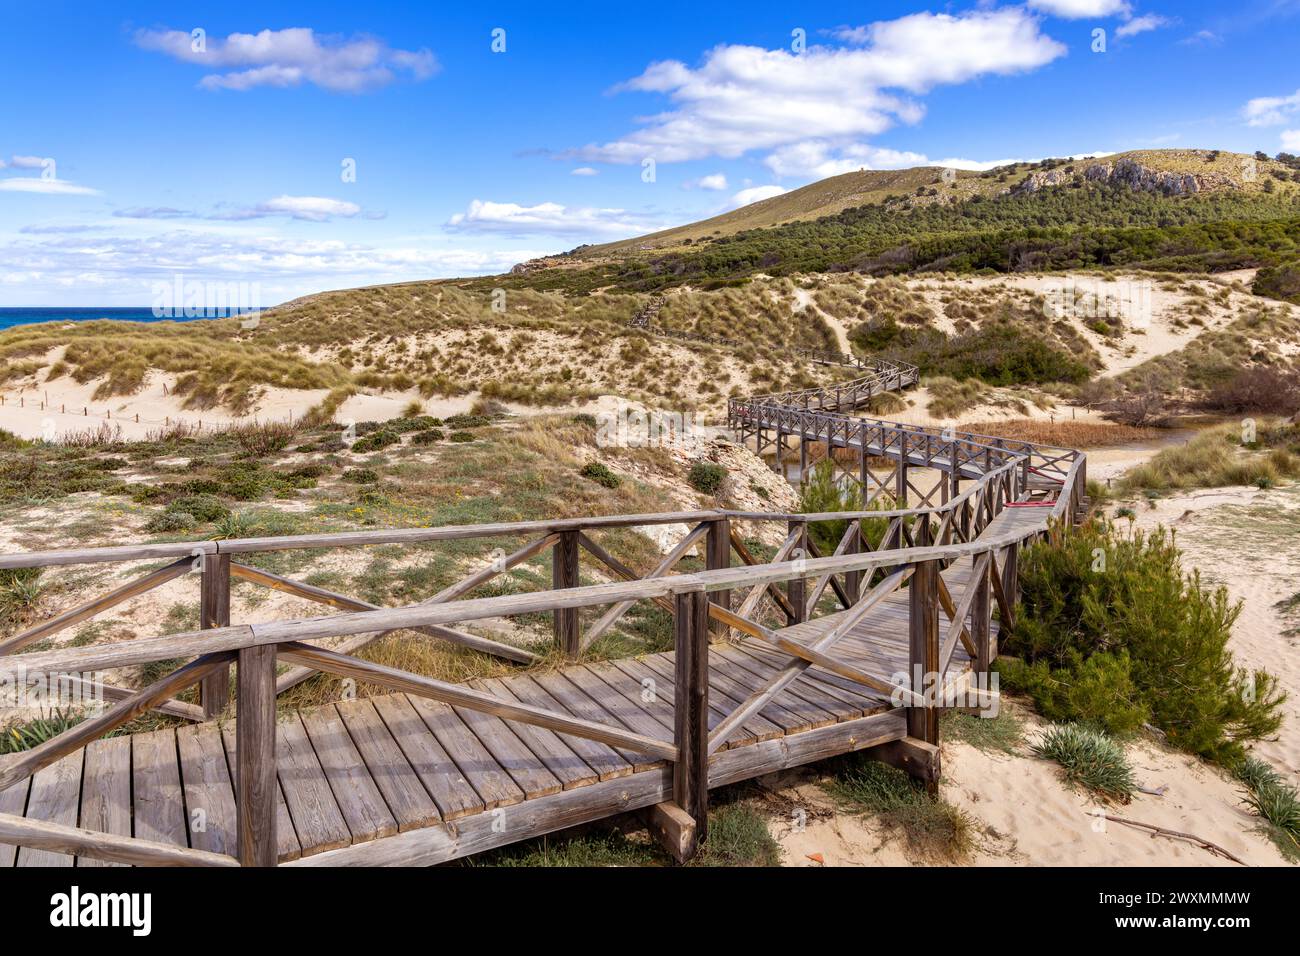 Passerelle en bois à travers les dunes de sable à Cala Mesquida, Majorque, Îles Baléares, Espagne Banque D'Images